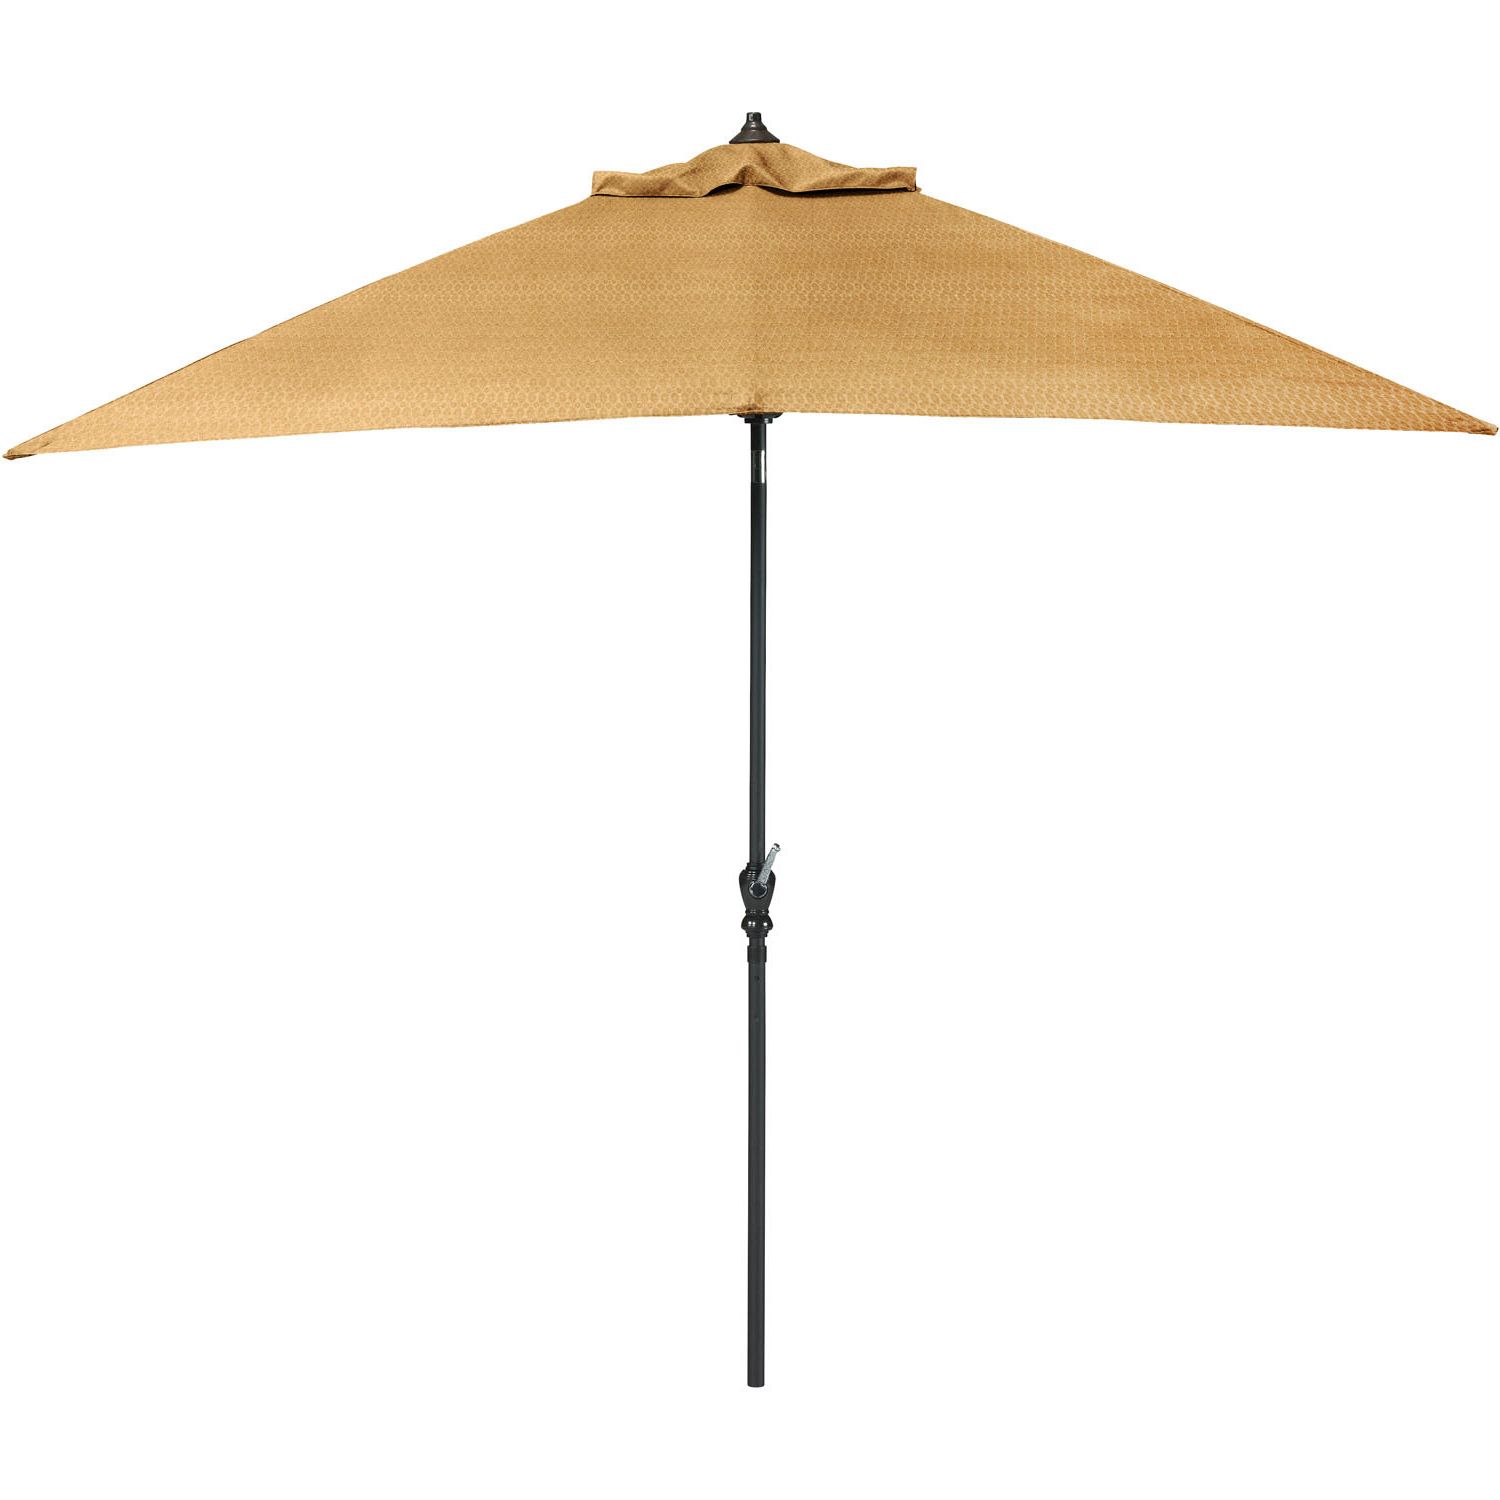 Sheehan Half Market Umbrellas For Popular Sweeten 9' Market Umbrella (View 18 of 20)